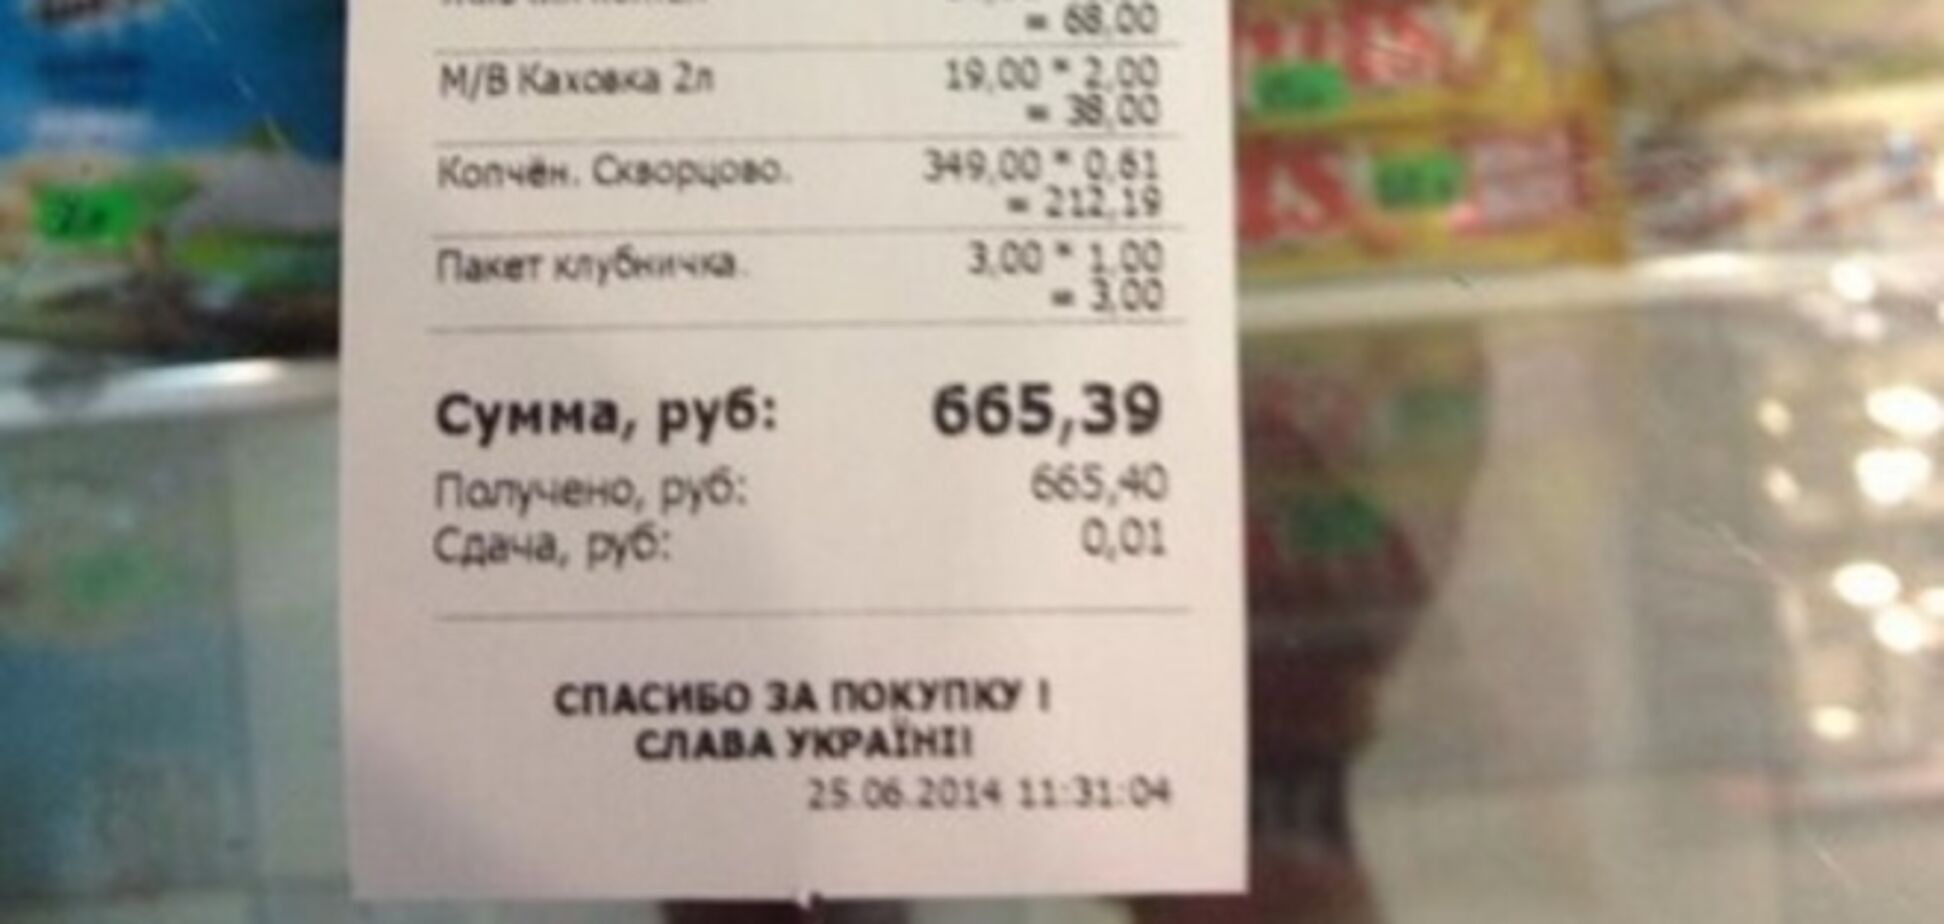 В крымском магазине обнаружились чеки с надписью 'Слава Украине!'